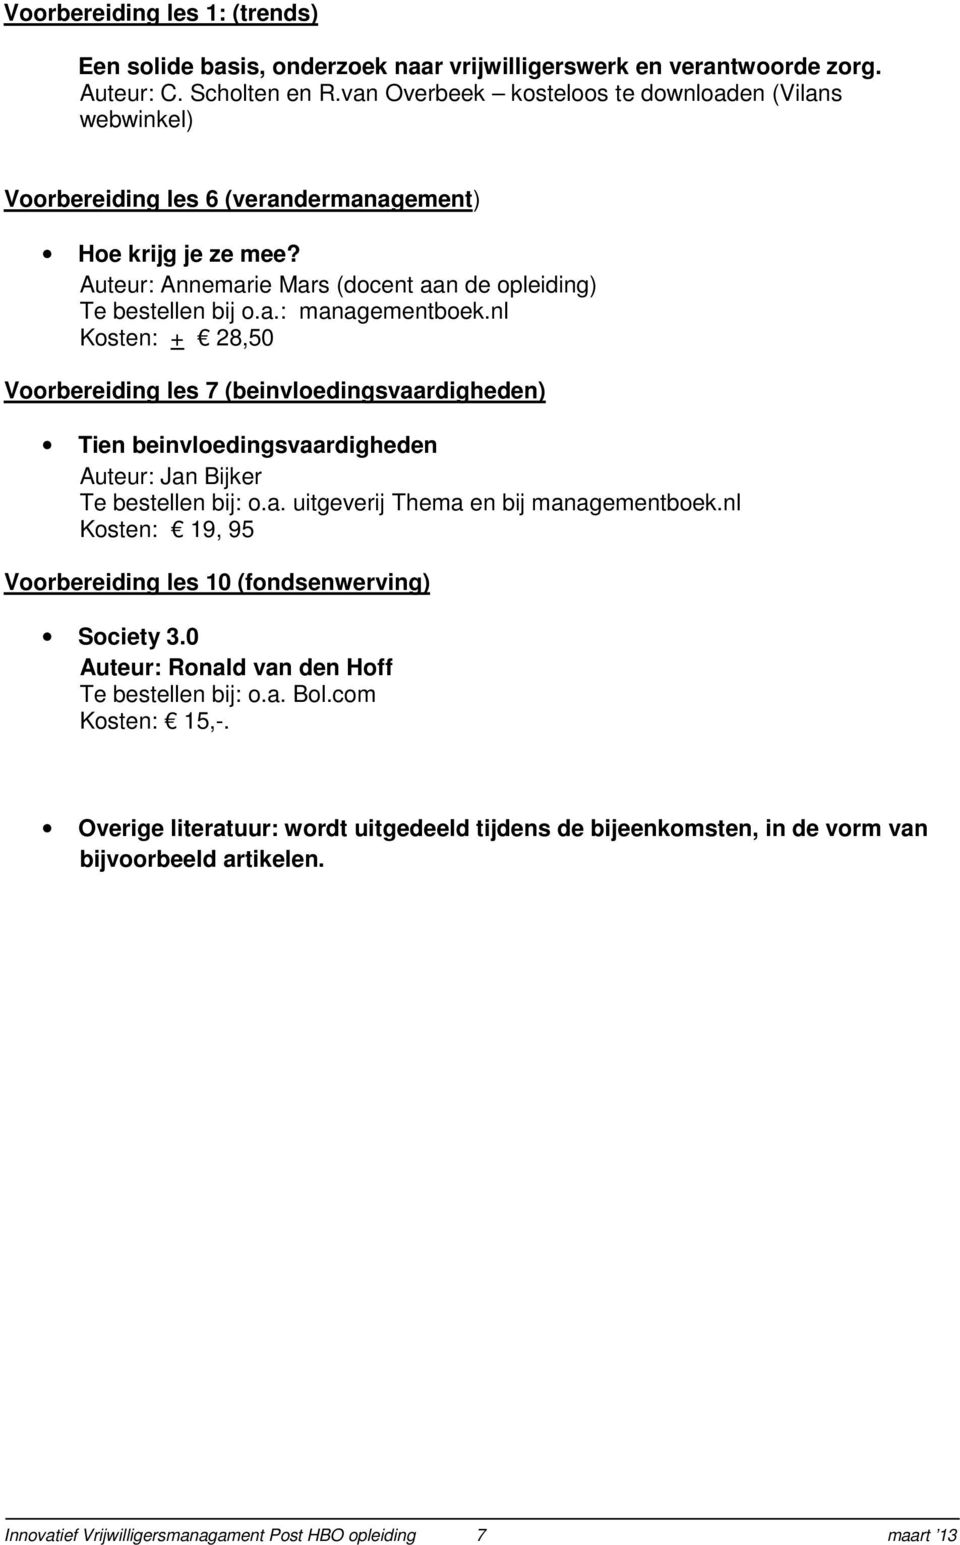 nl Kosten: + 28,50 Voorbereiding les 7 (beinvloedingsvaardigheden) Tien beinvloedingsvaardigheden Auteur: Jan Bijker Te bestellen bij: o.a. uitgeverij Thema en bij managementboek.